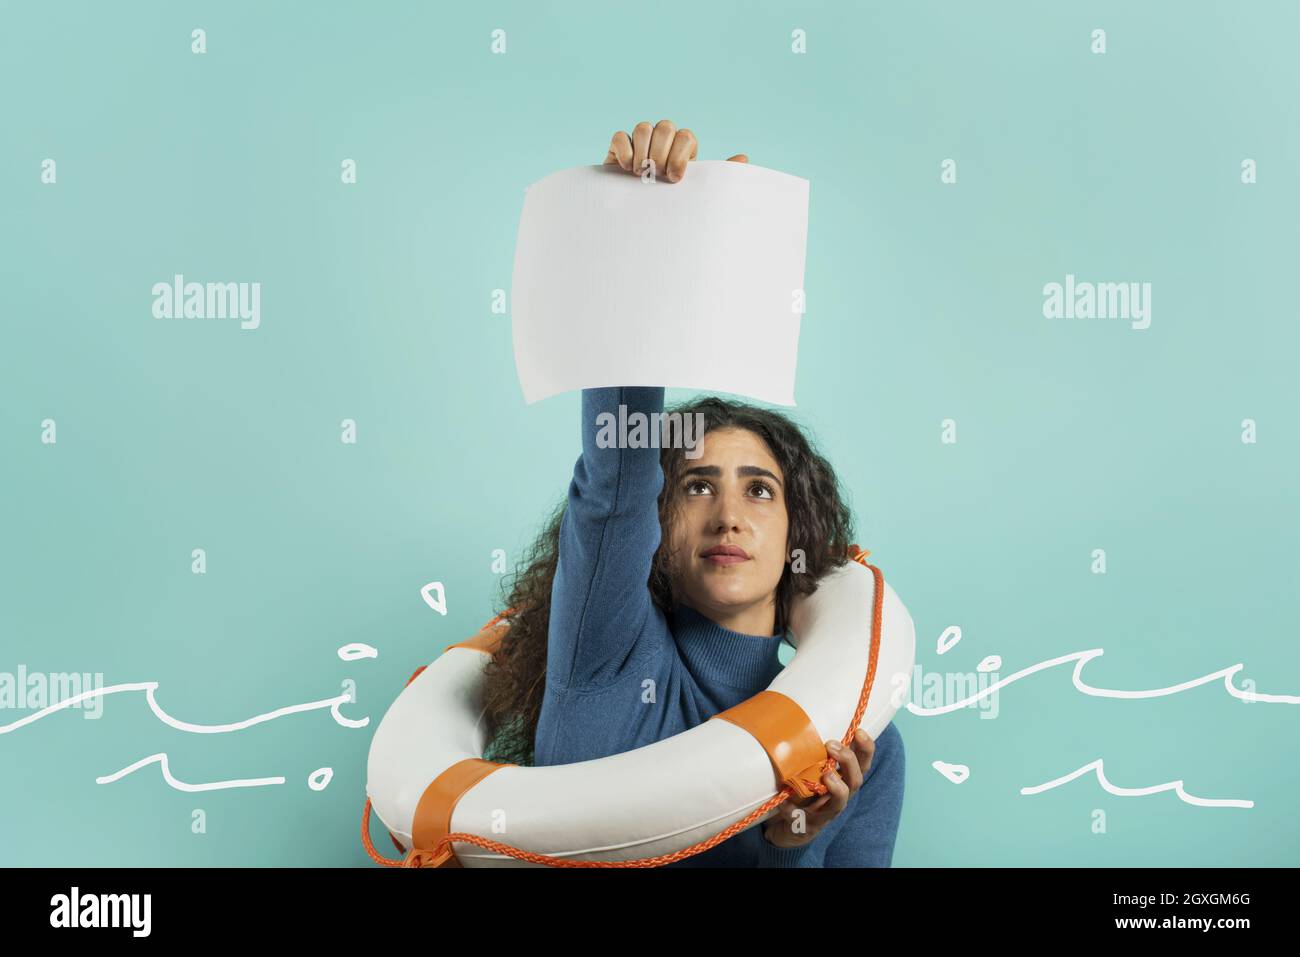 La donna sta annegando e chiedere aiuto con un messaggio di un foglio di carta. Foto Stock